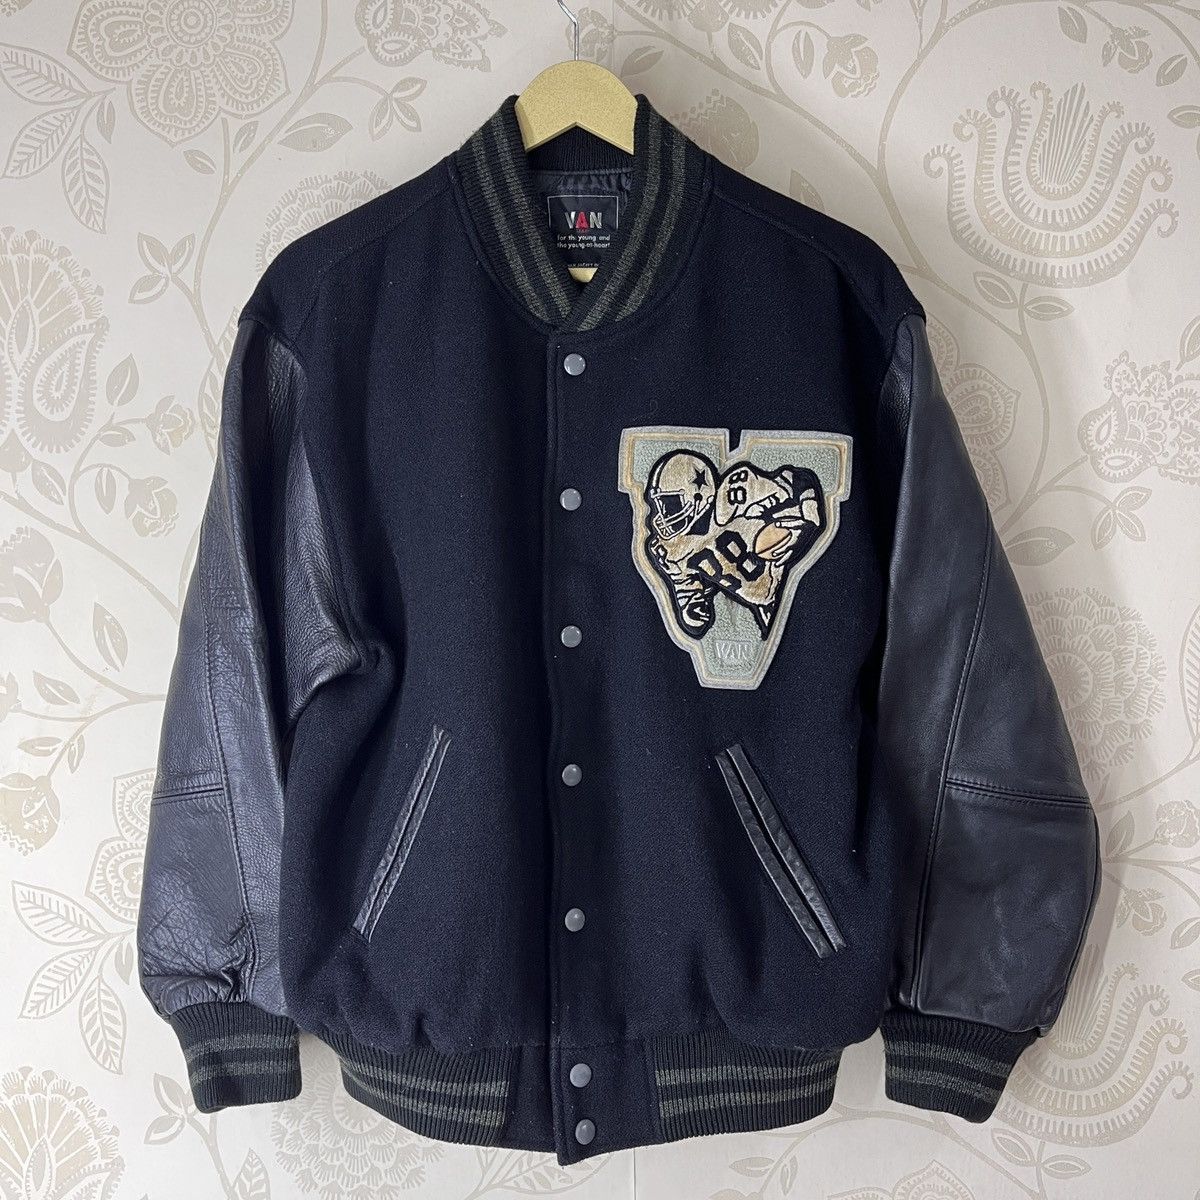 Vintage Quilted Leather Letterman Varsity Jacket By VAN - 1